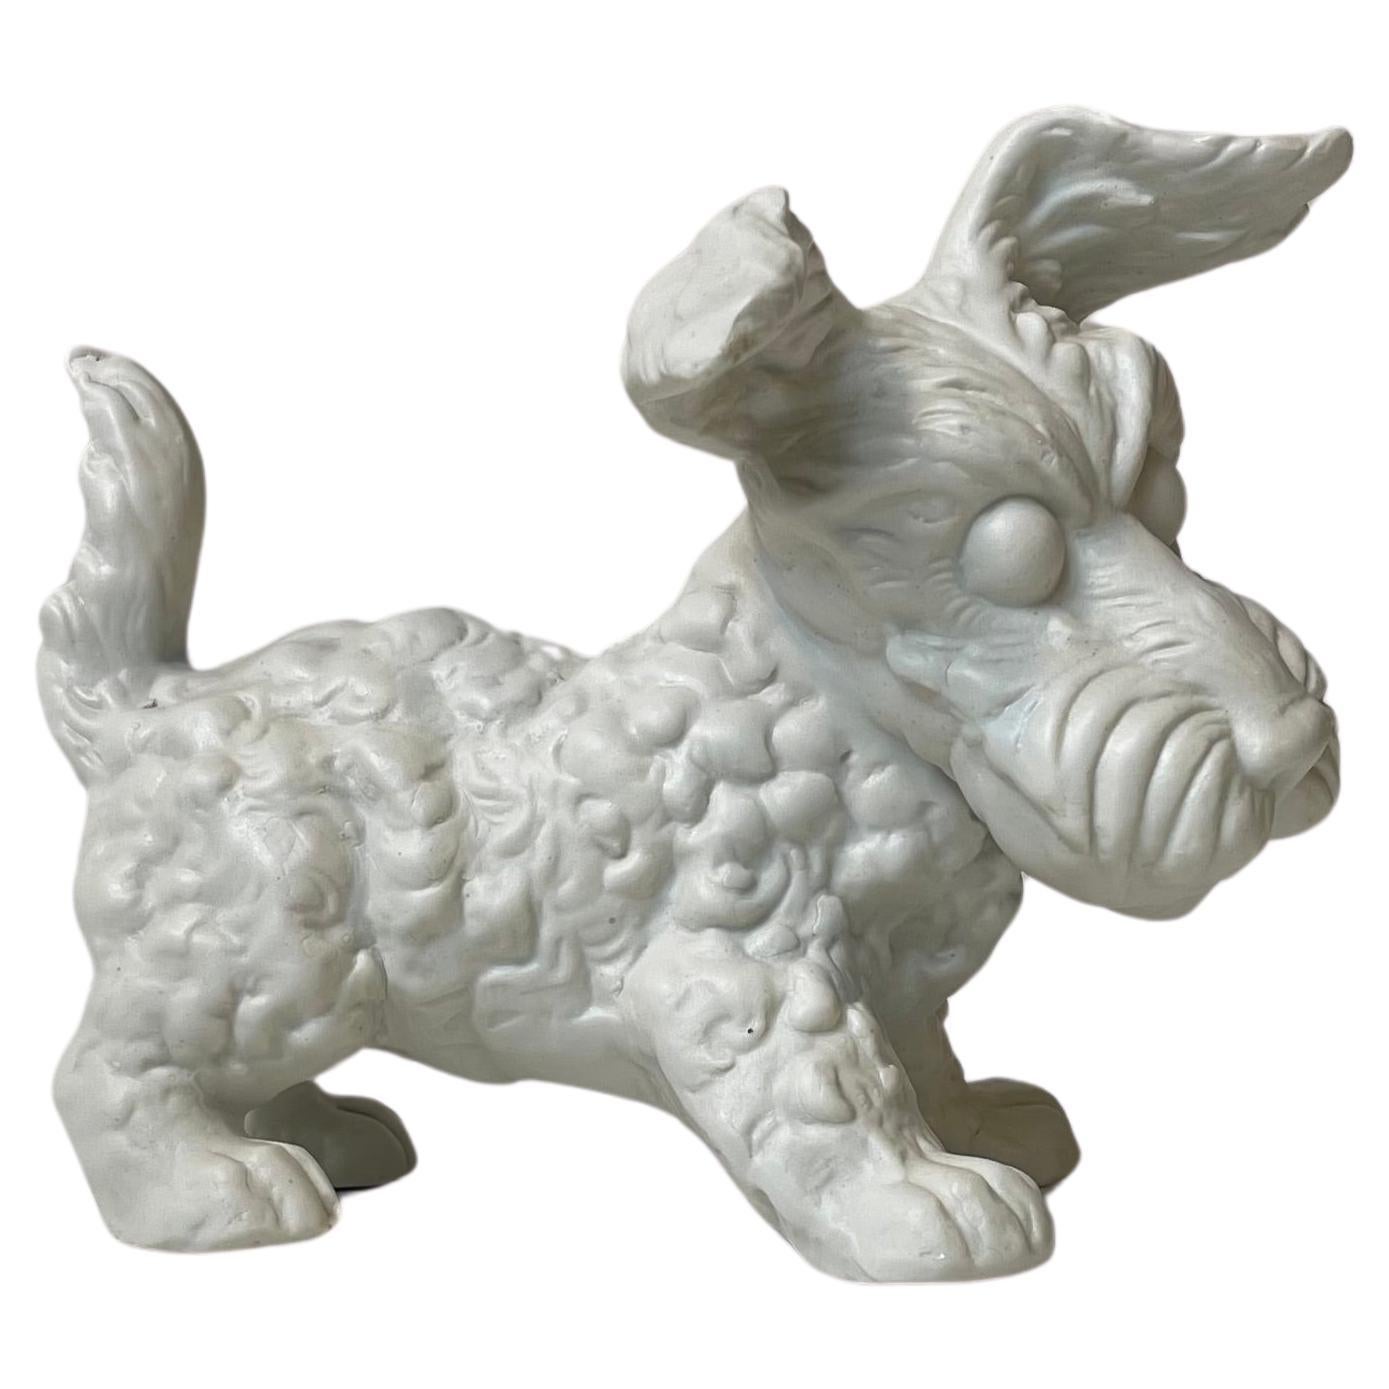 Scottish Terrier White Bisque Porcelain Figurine by Schaubach Kunst, 1950s